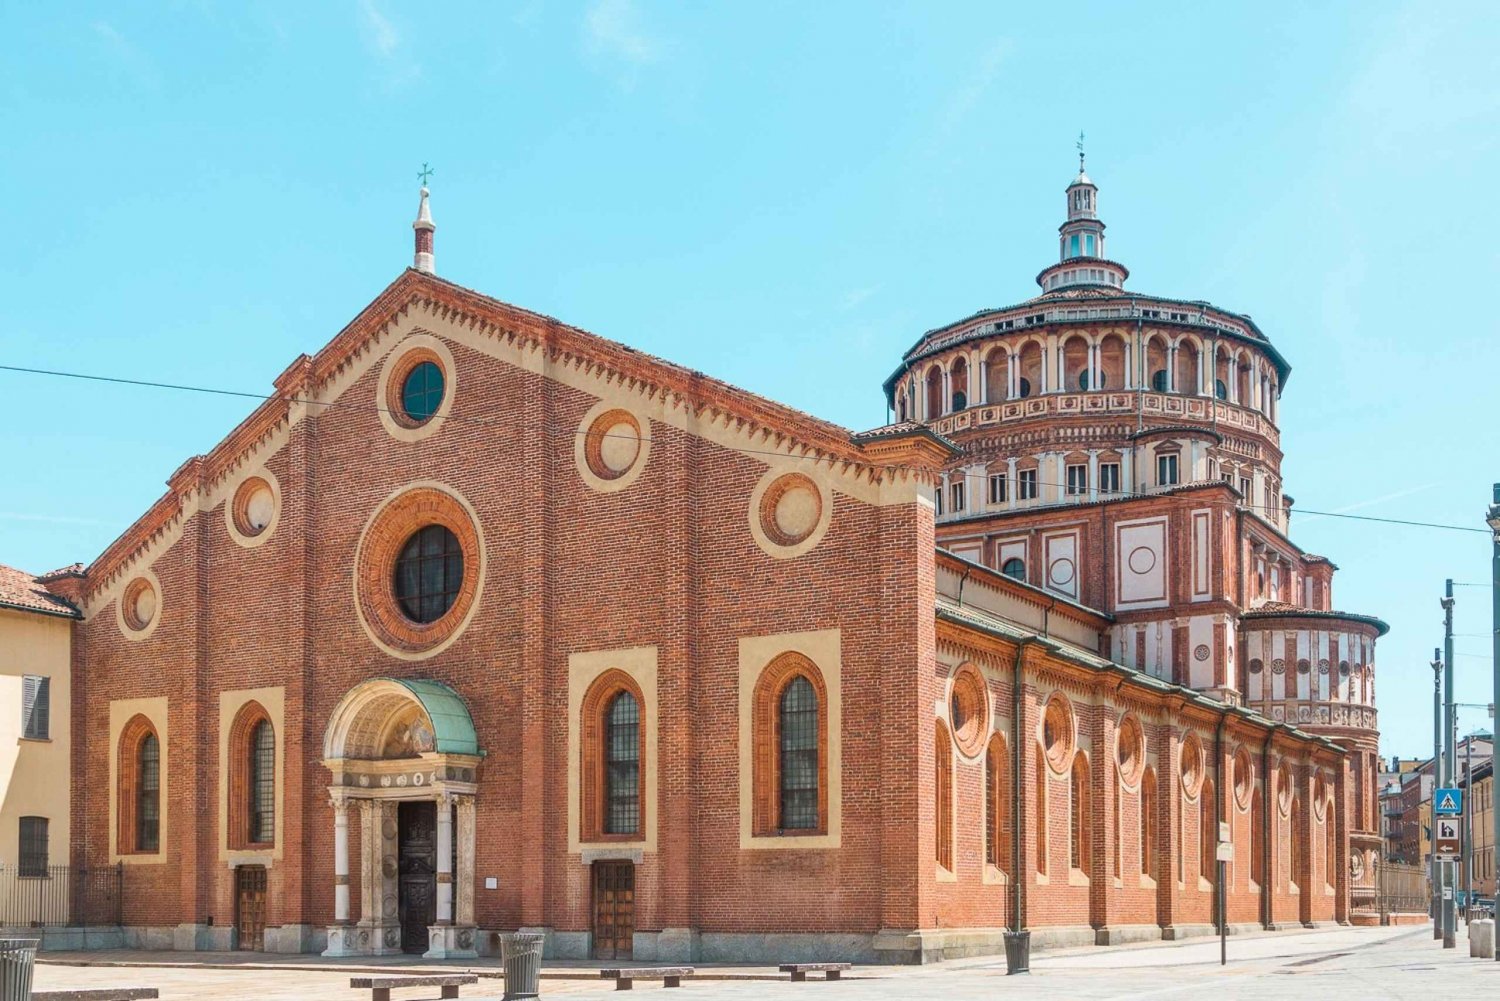 Milan: The Last Supper and Santa Maria delle Grazie Tour